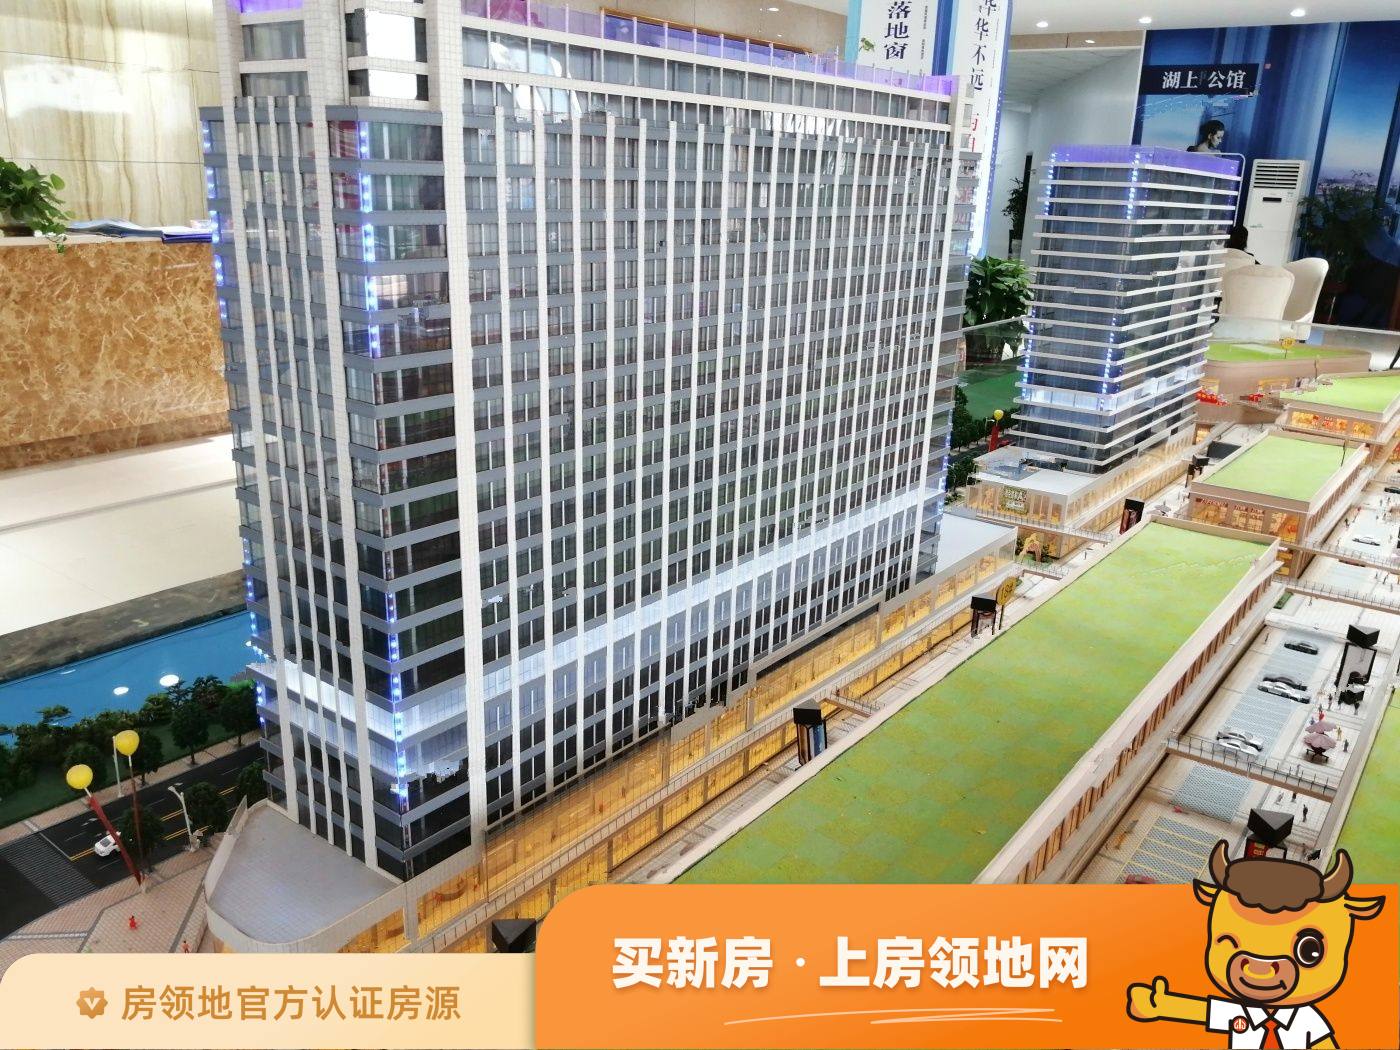 永州祁阳国际博览城均价为6000元每平米